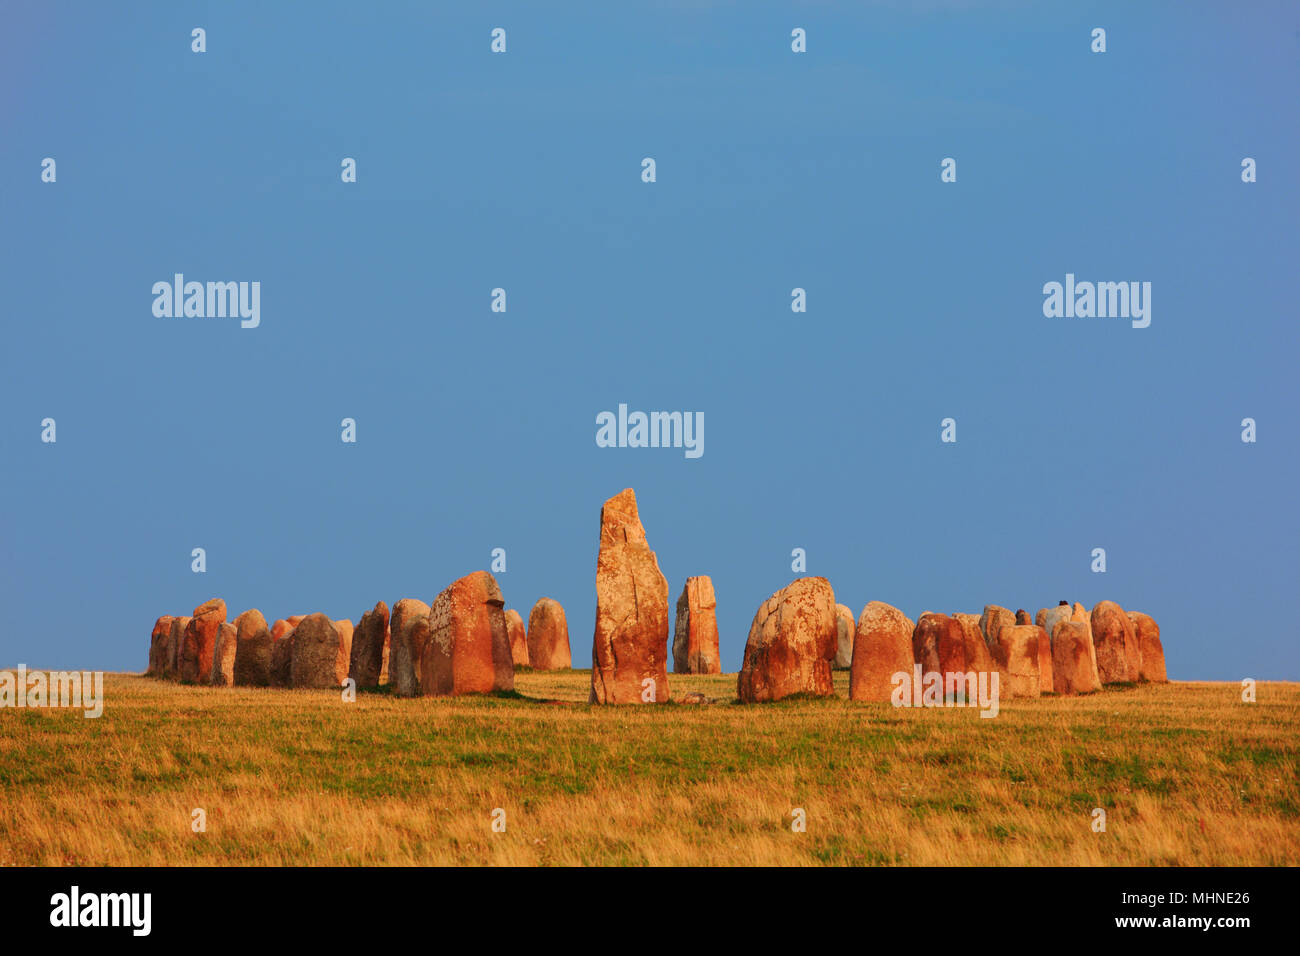 Ale des pierres (Ales stenar) est un anicient monument mégalithique formé par Pierre 59 gros rochers dans la province de Scanie, dans le sud de la Suède Banque D'Images